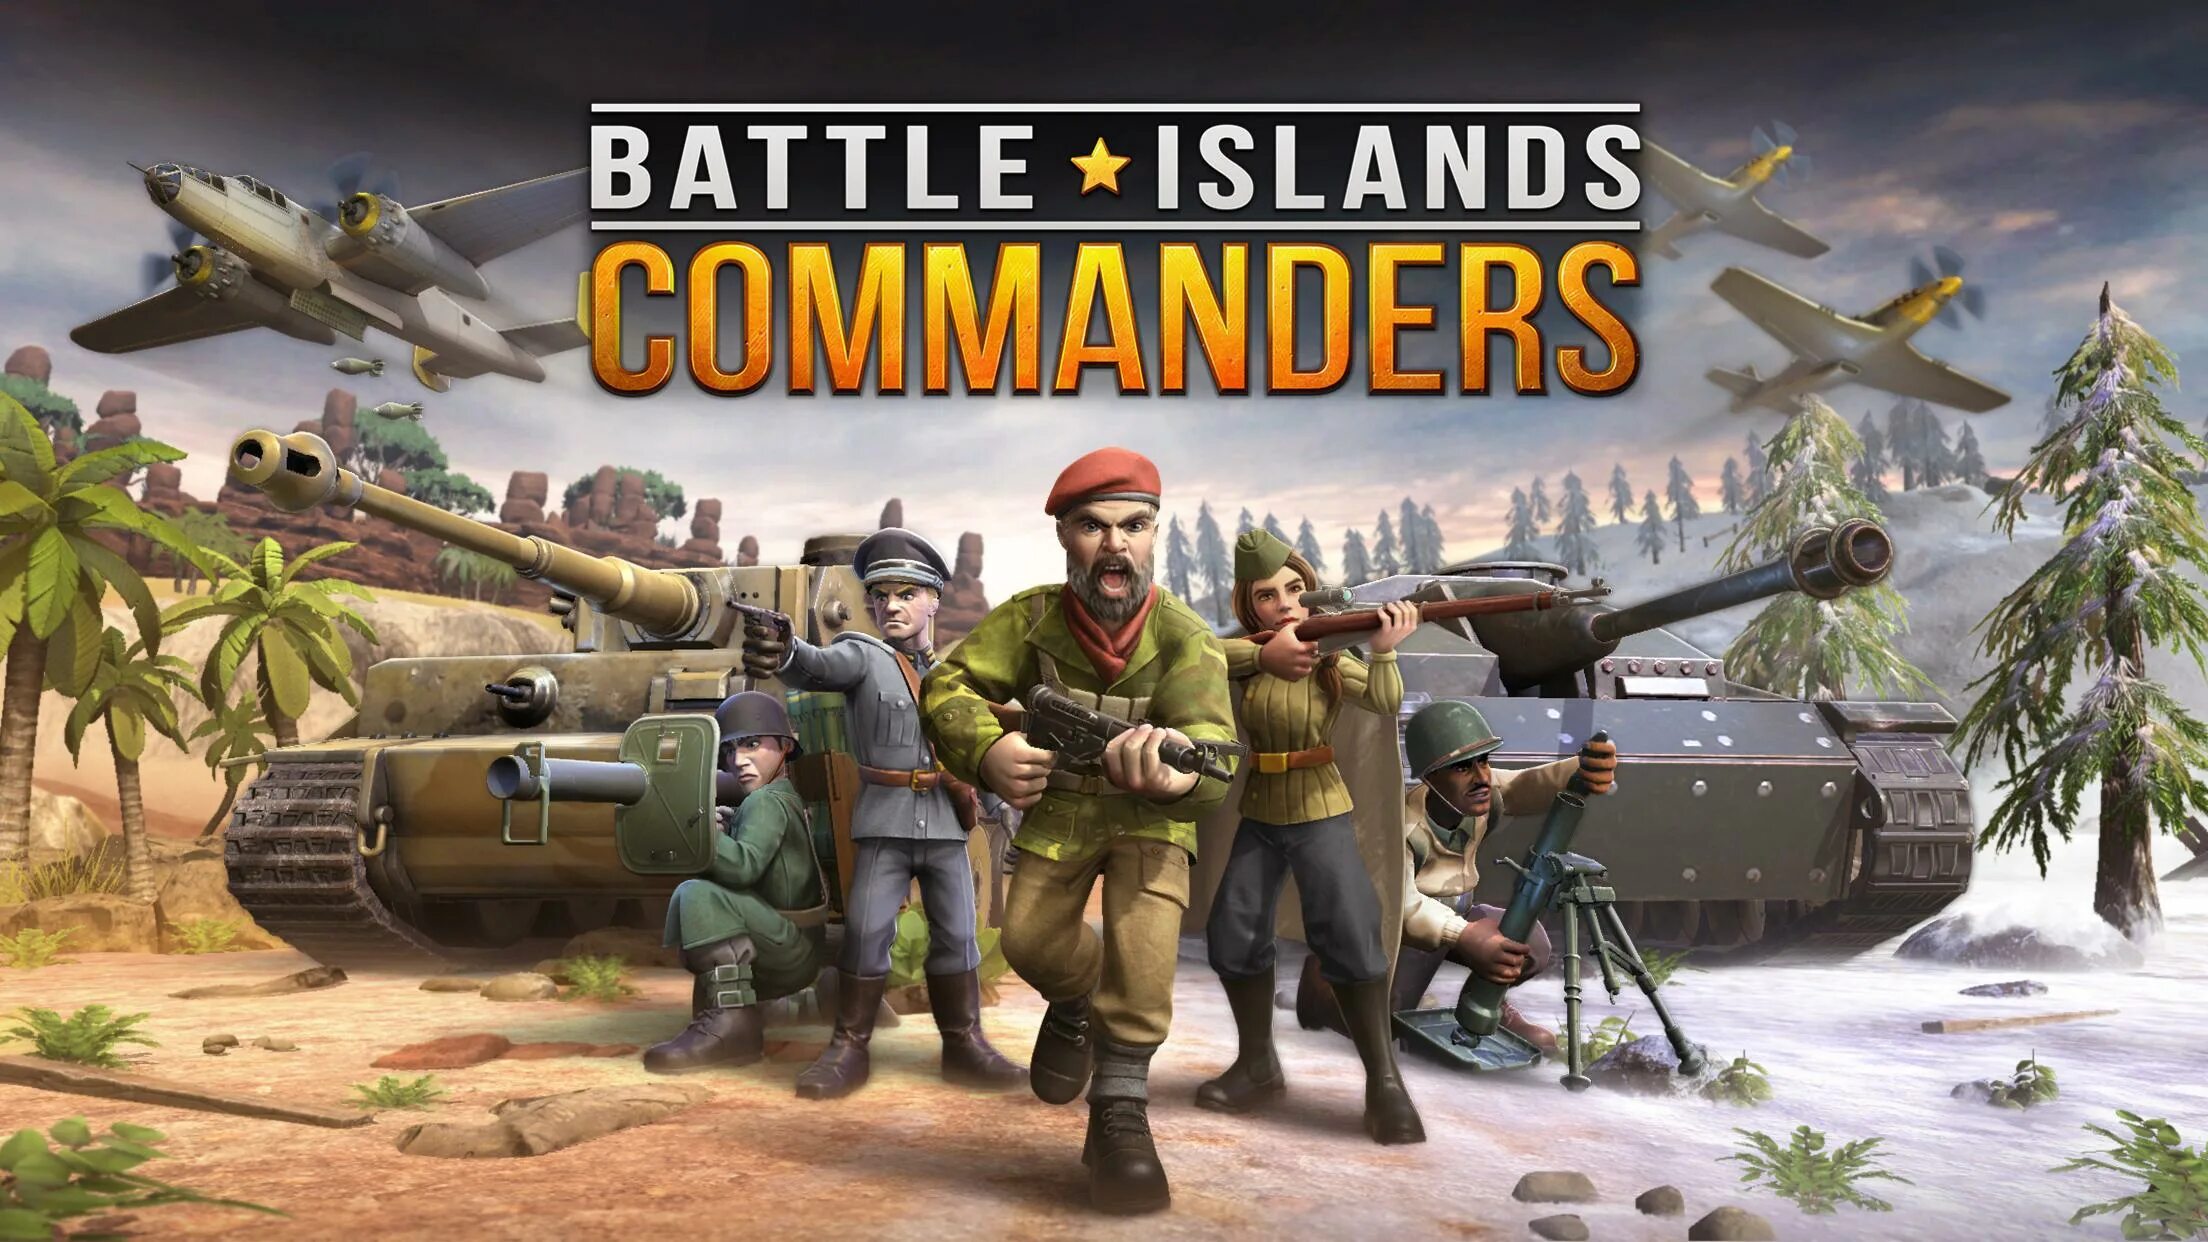 Батл Исланд командер. Игра Battle Islands. Battle Islands: Commanders. Battle Islands: Commanders игра.